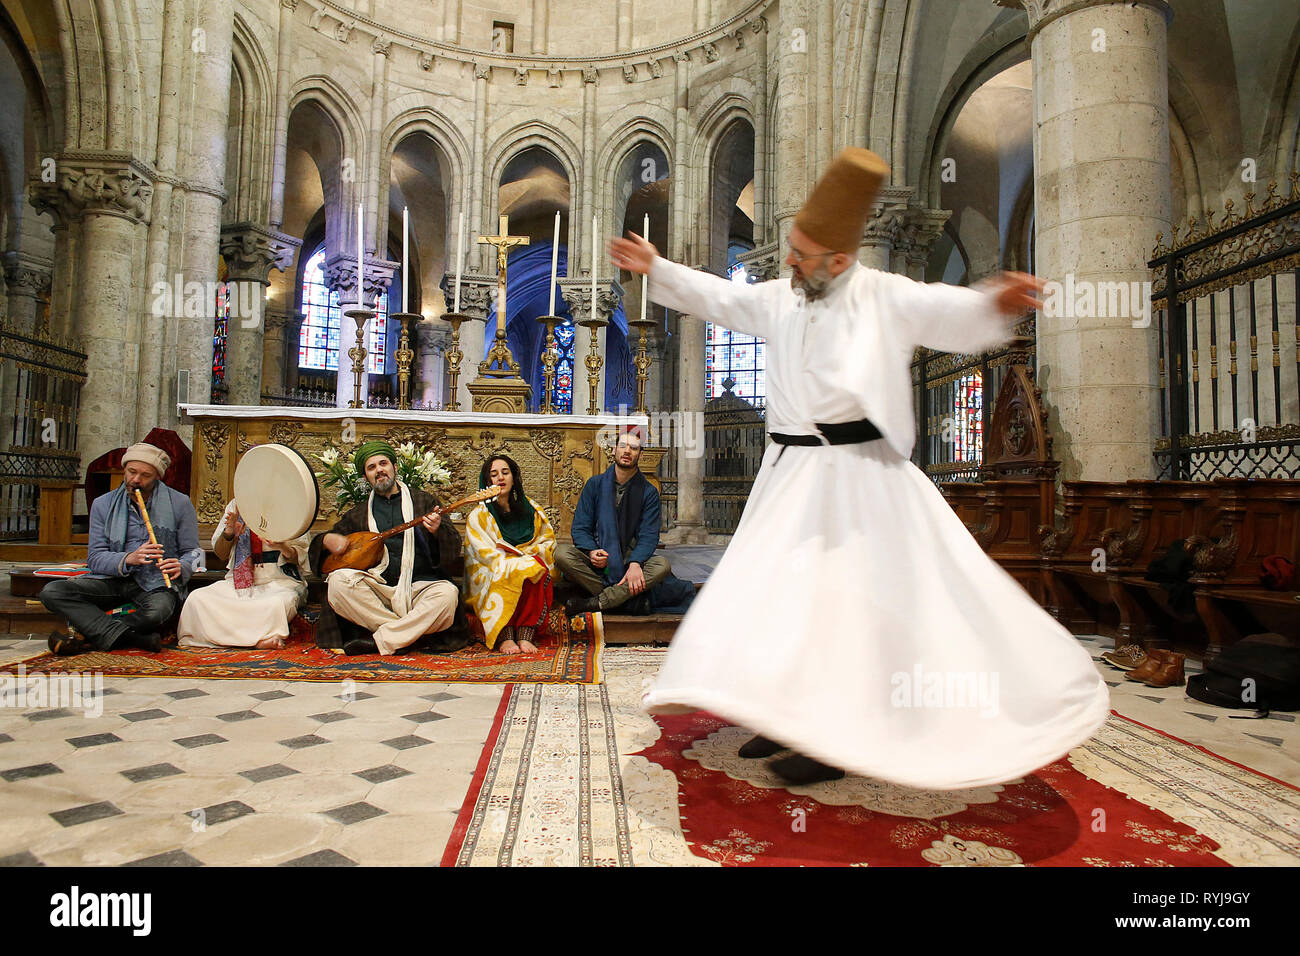 Mariage musulman Soufi dans l'église catholique St Nicolas, Blois, France. Groupe de musique soufie et derviche tourneur. Banque D'Images